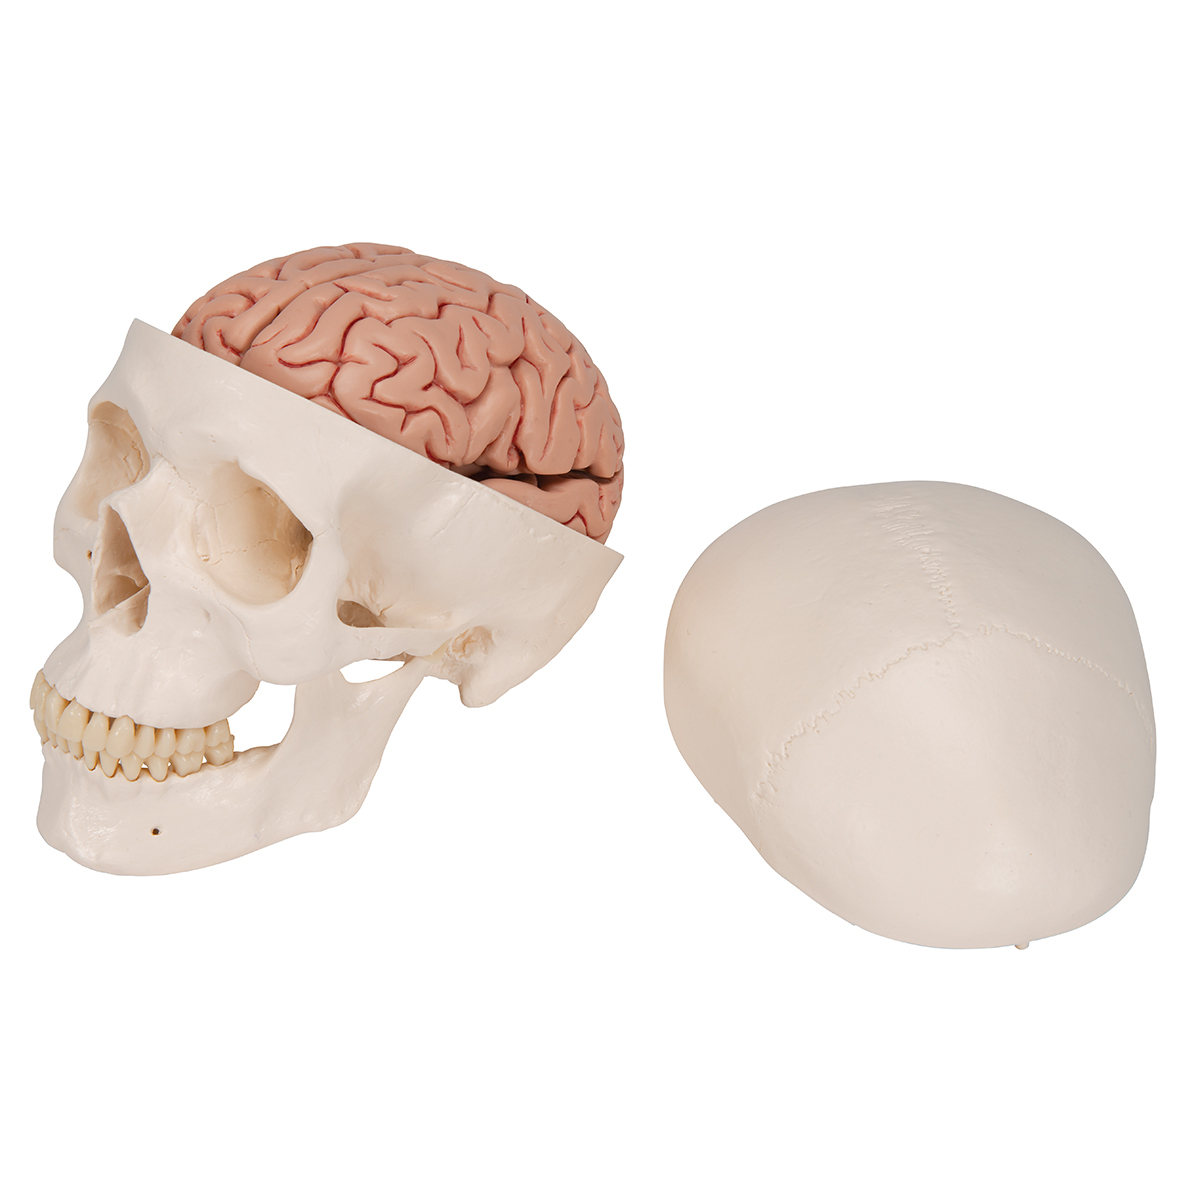 1 1 Menschlicher Kopf Schädel Skelett & 8 Teile Menschliches Gehirn Modell 